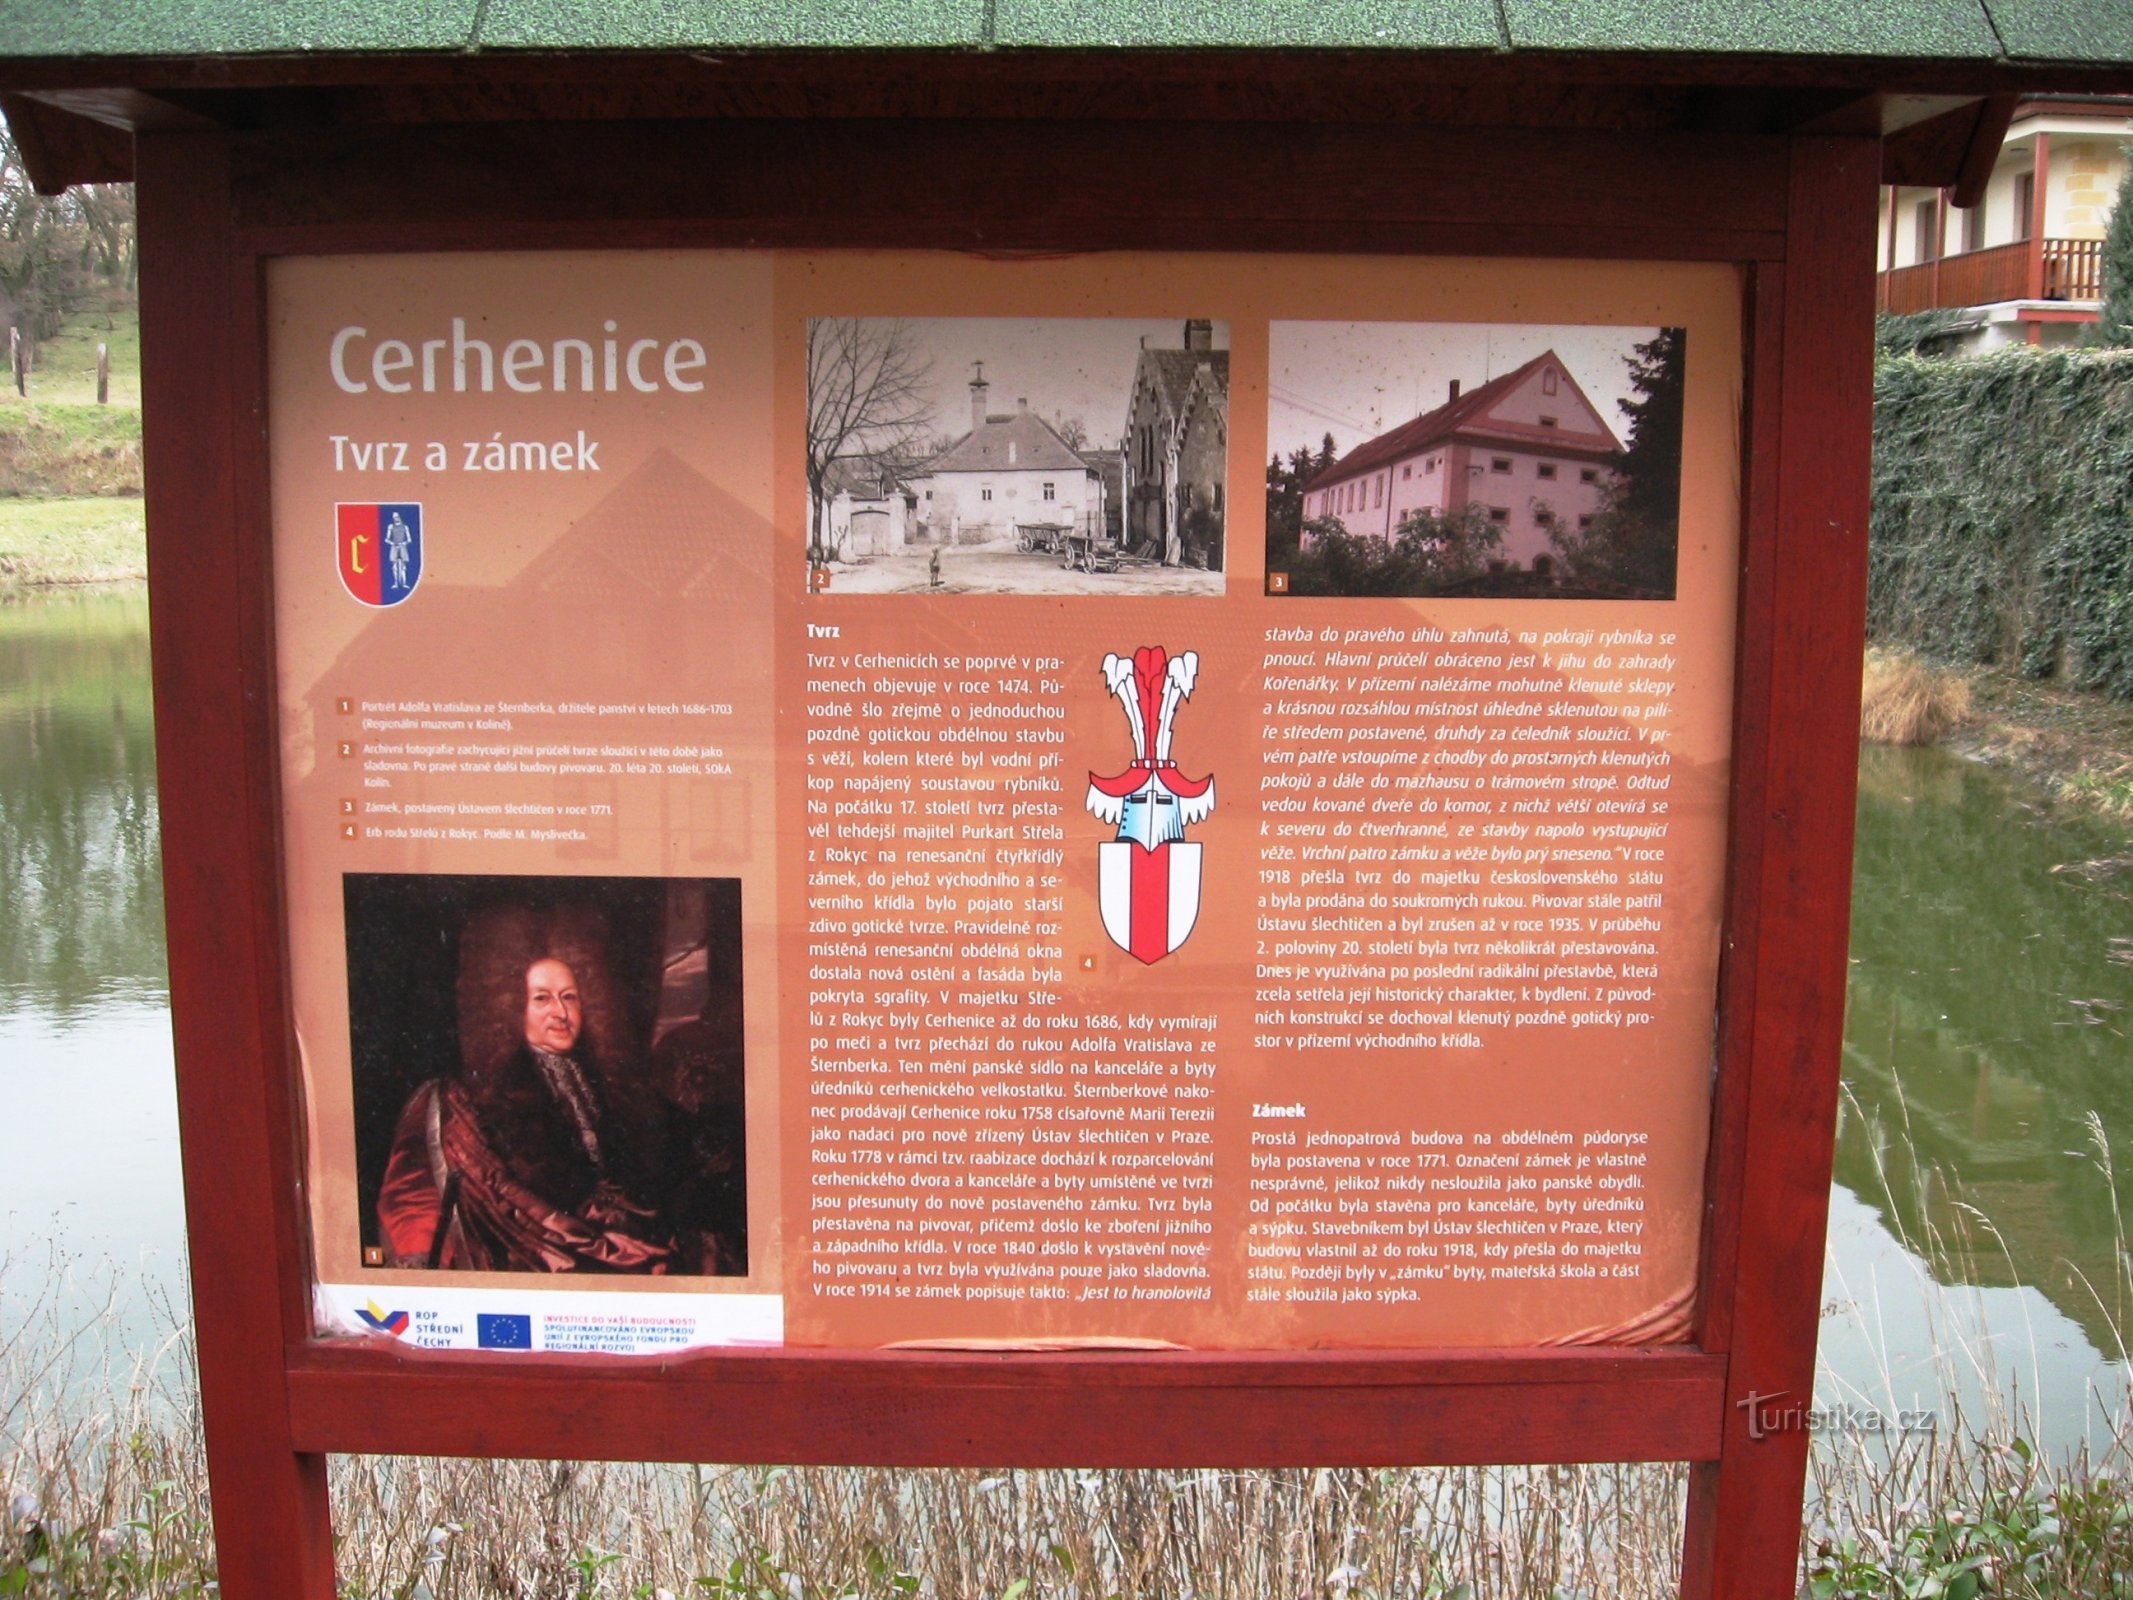 інформаційна дошка на замку та фортеці в Чергеніце